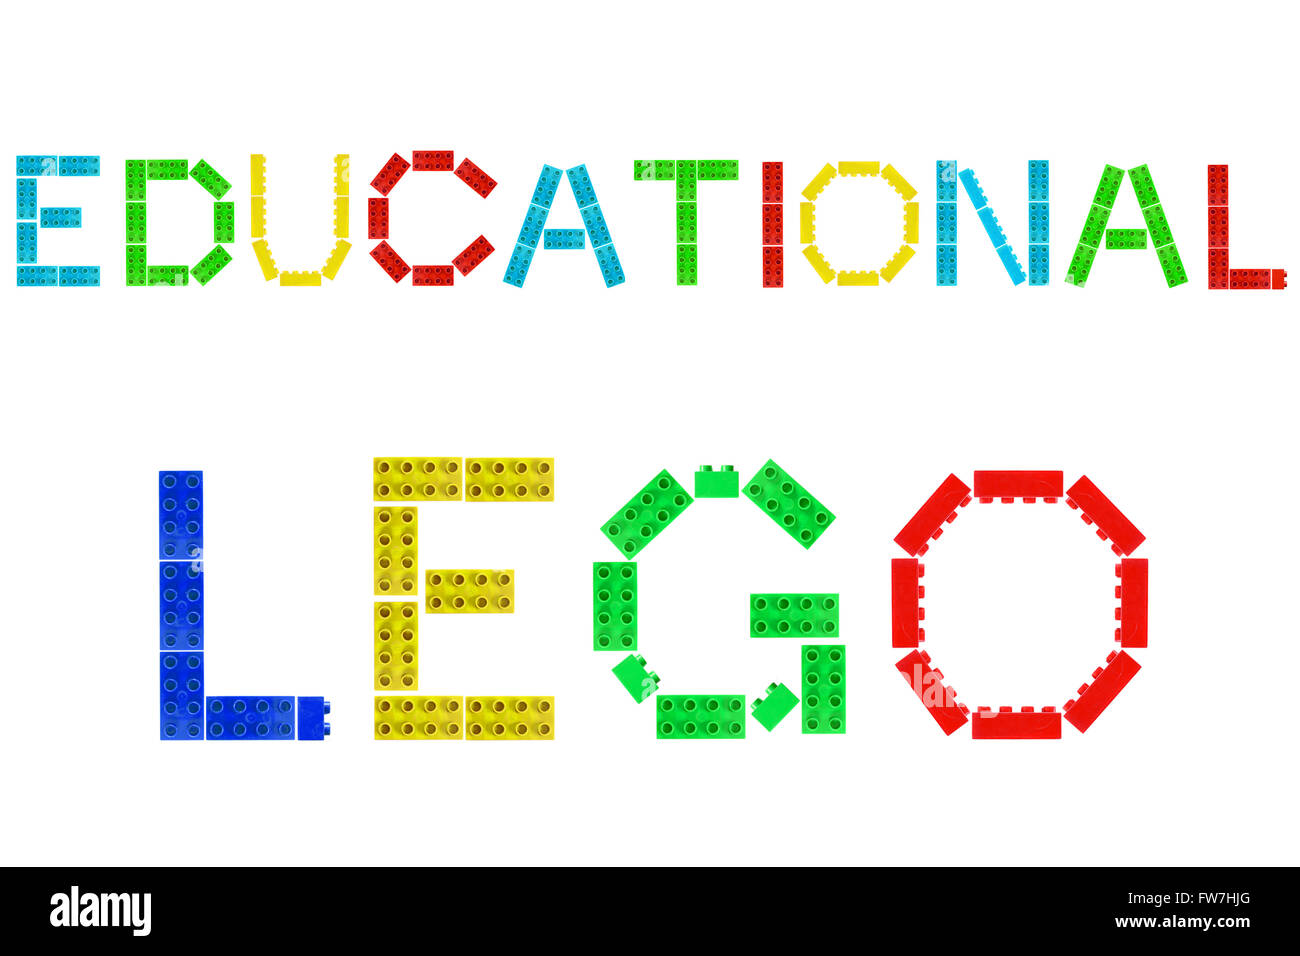 Pädagogische Lego aus Lego-Steinen fotografiert vor einem weißen Hintergrund erstellt. Stockfoto